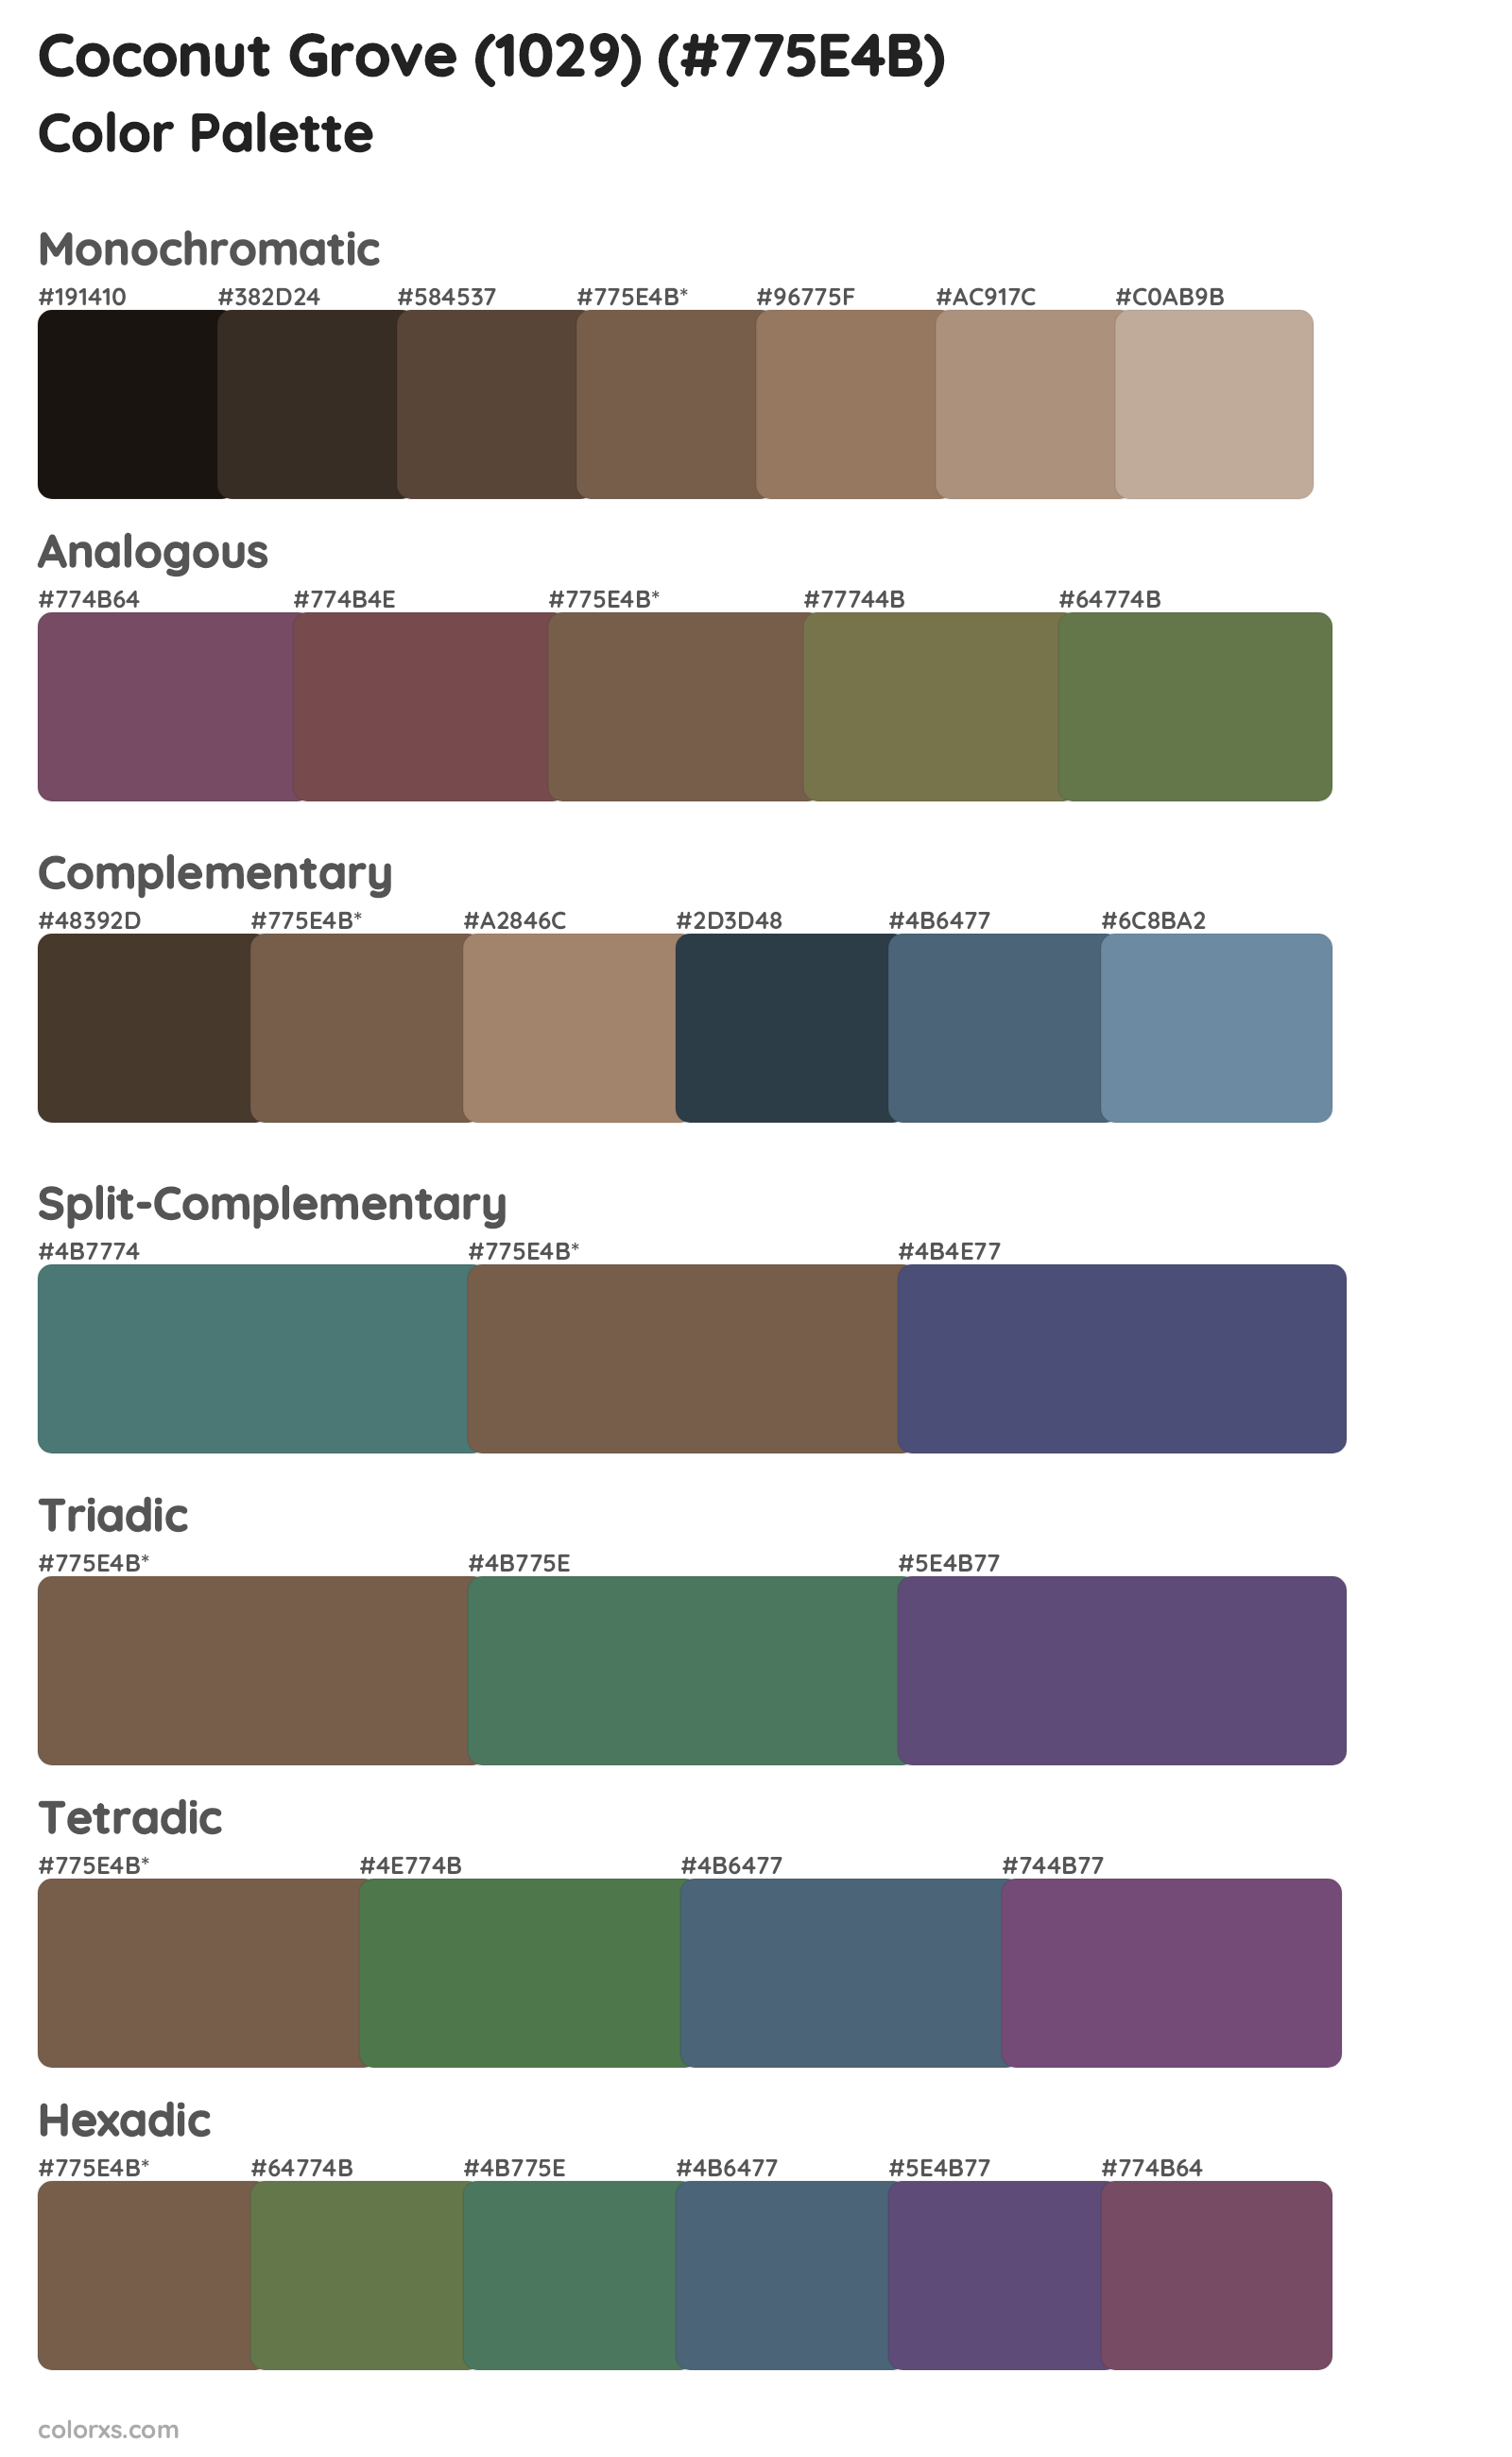 Coconut Grove (1029) Color Scheme Palettes